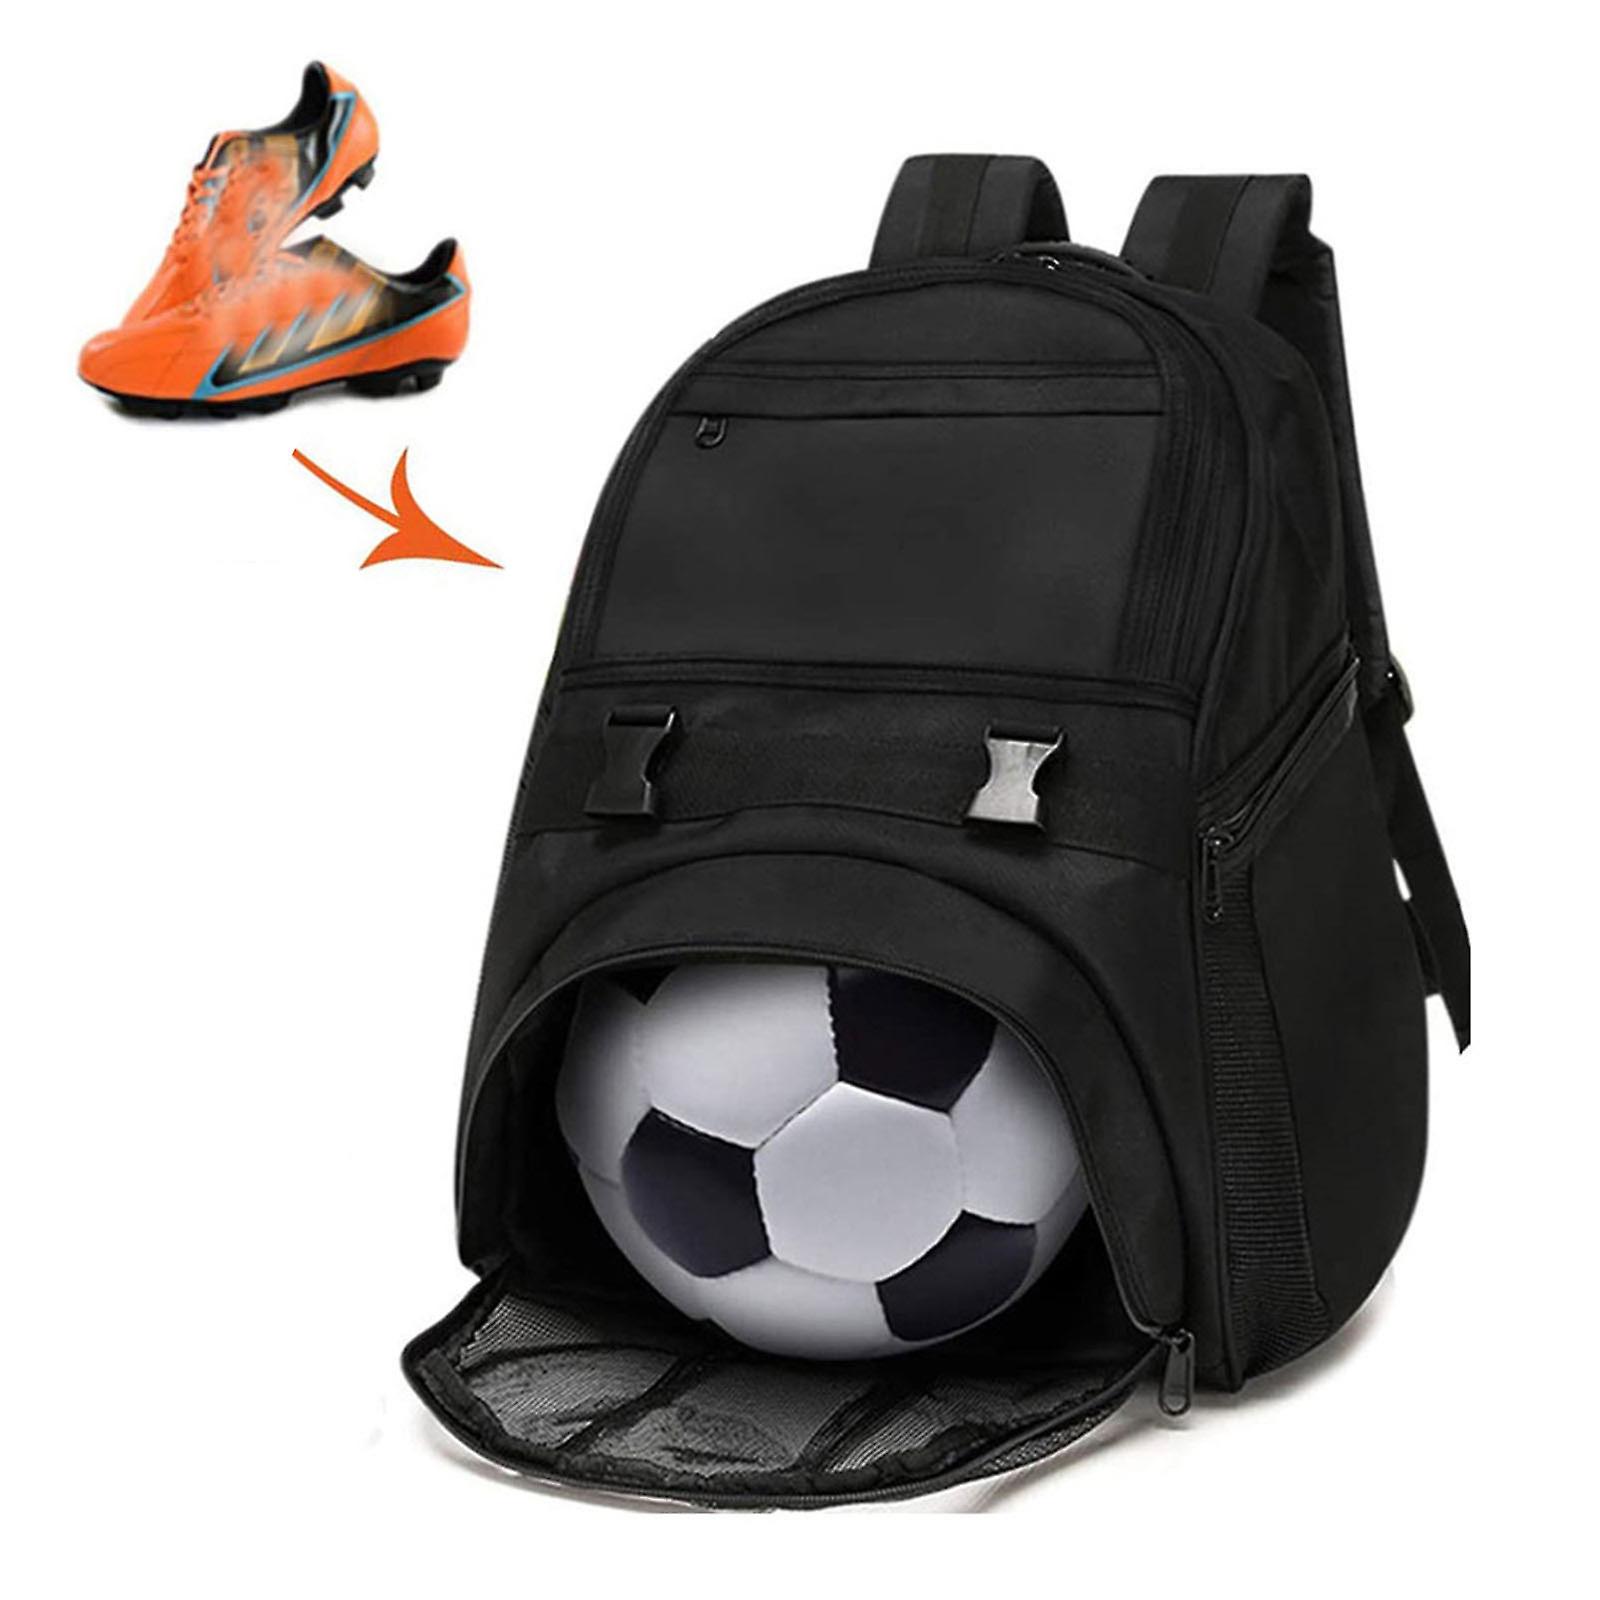 Gaoguang Plecak do koszykówki dla młodzieży Plecak piłkarski i torby do koszykówki, siatkówki, piłki nożnej, sportów zawiera oddzielne knagi na but...